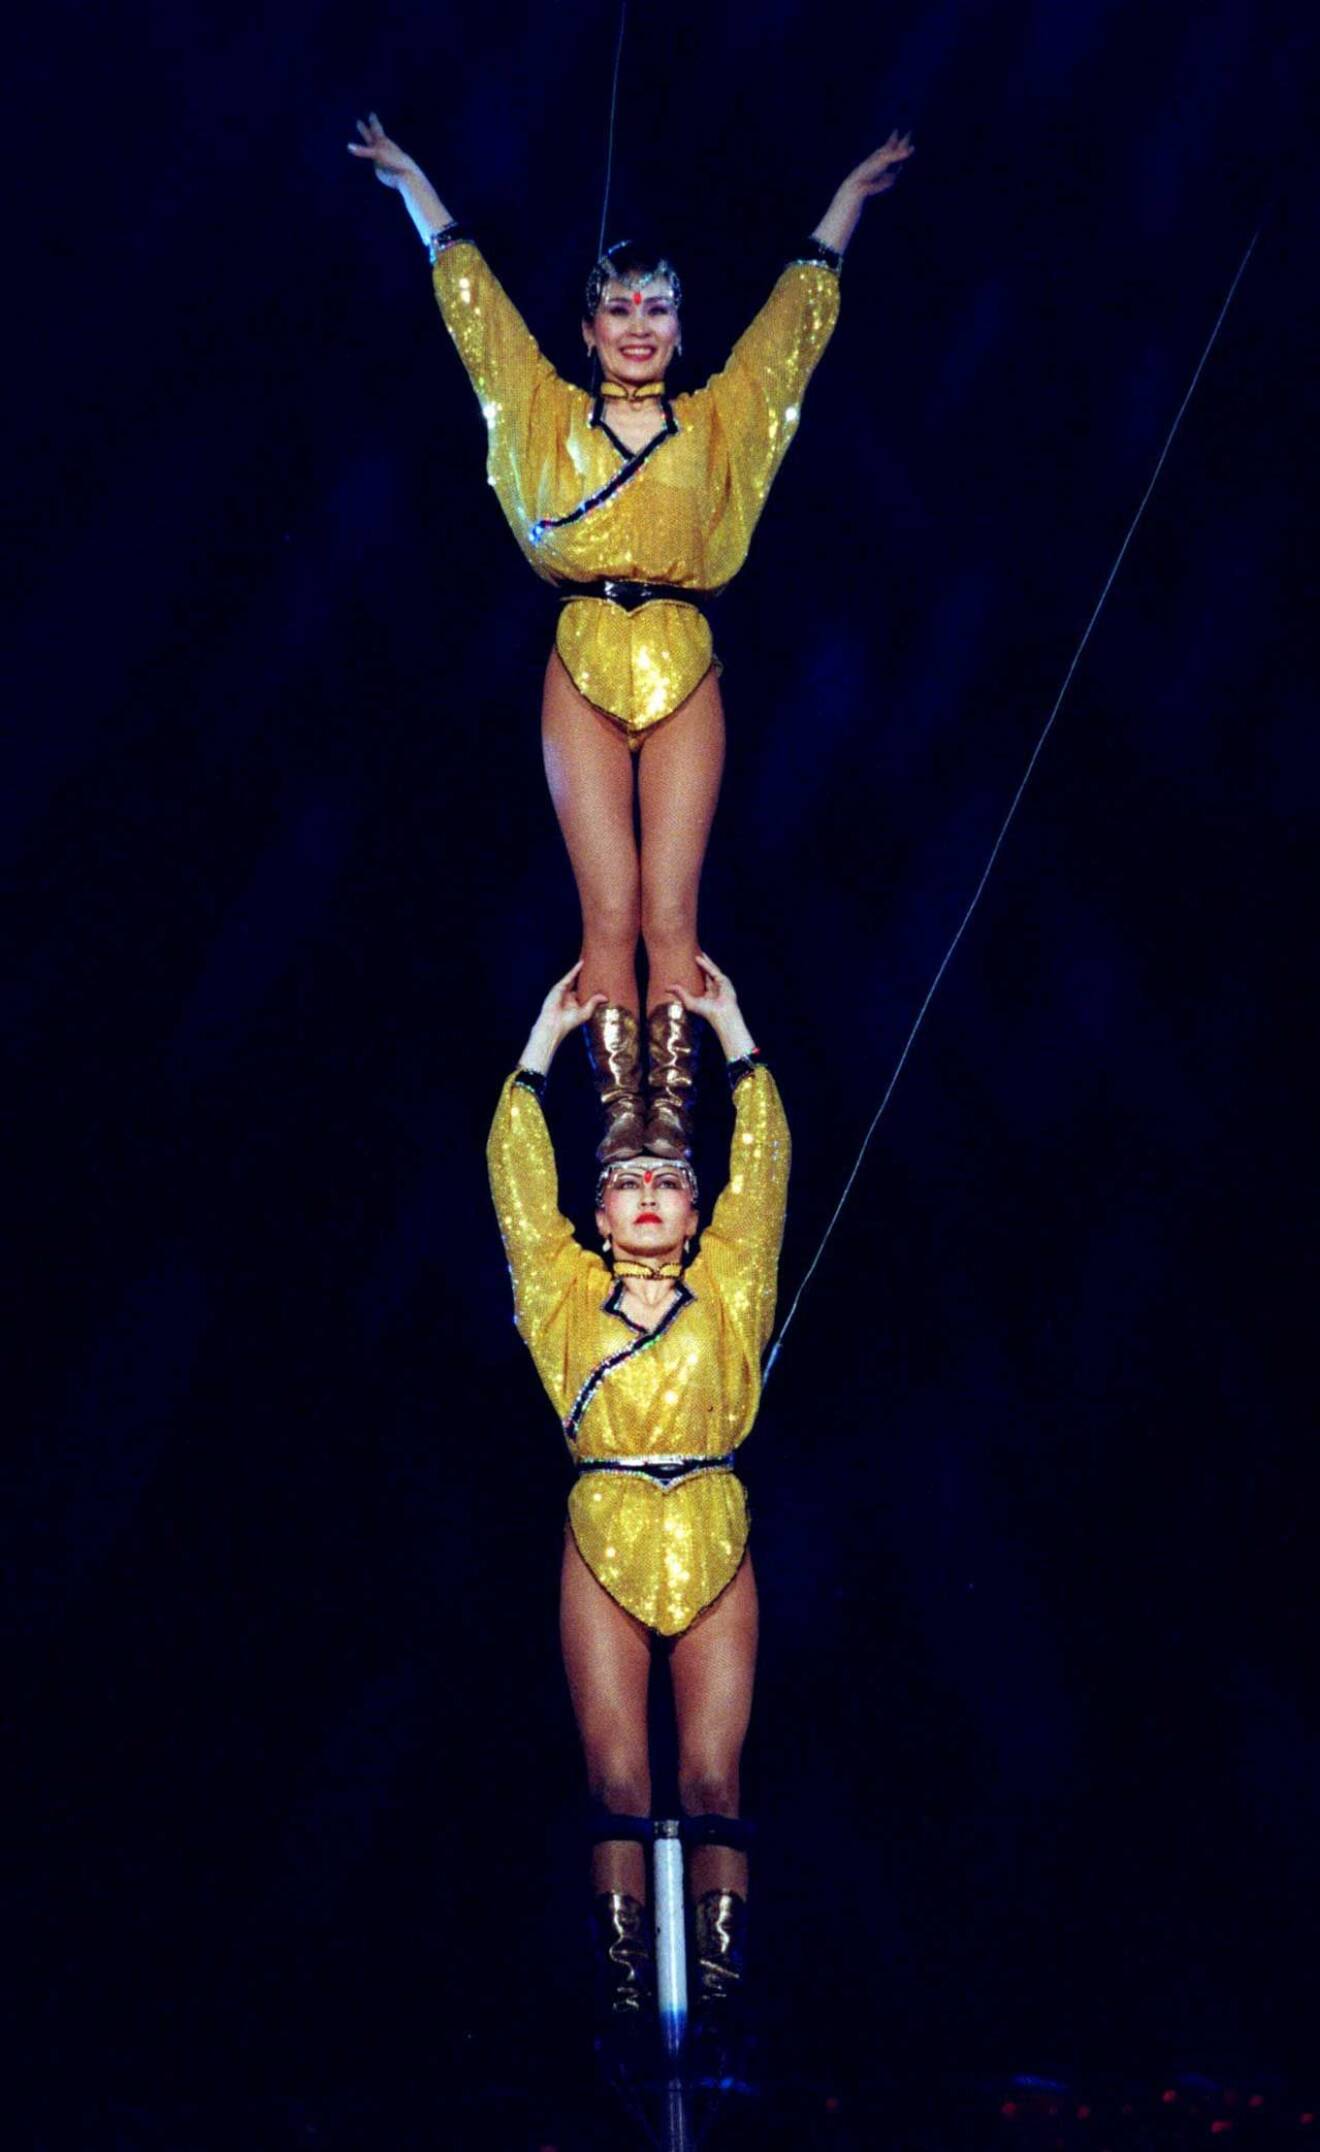 Både styrka och smidighet visade dessa två gymnaster prov på.